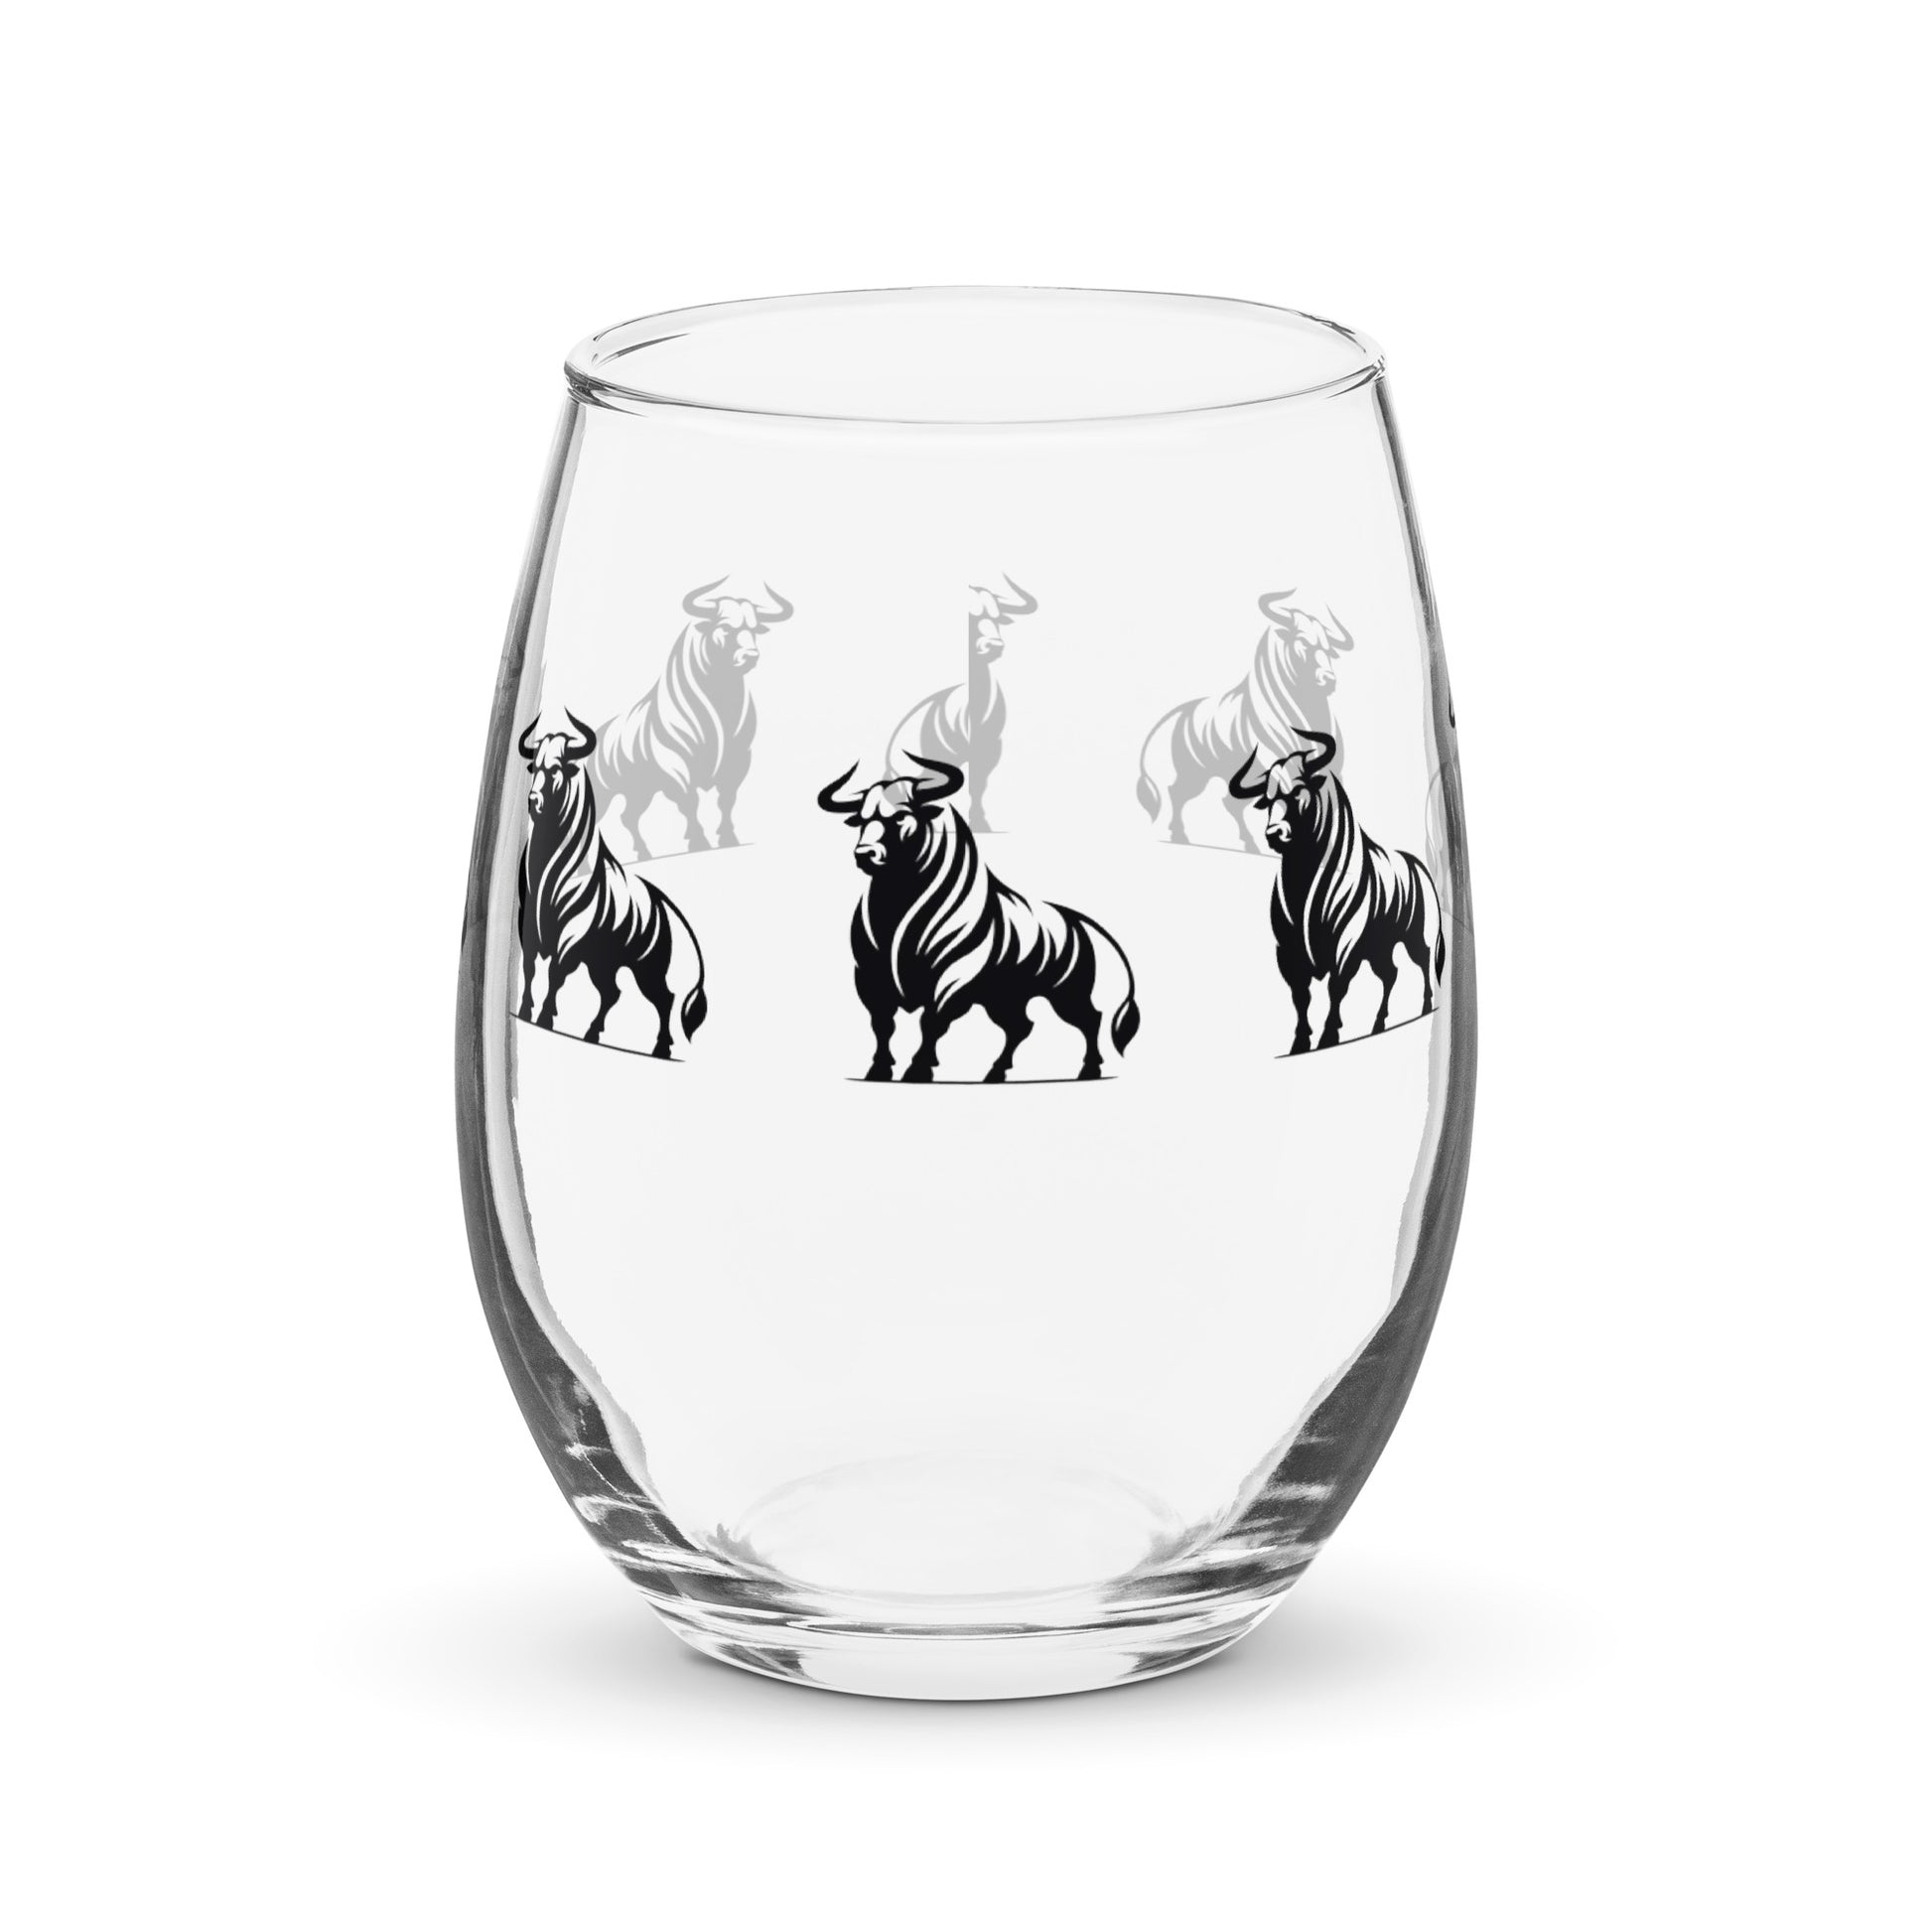 adrian del lago bull personalized wine glass wine glass